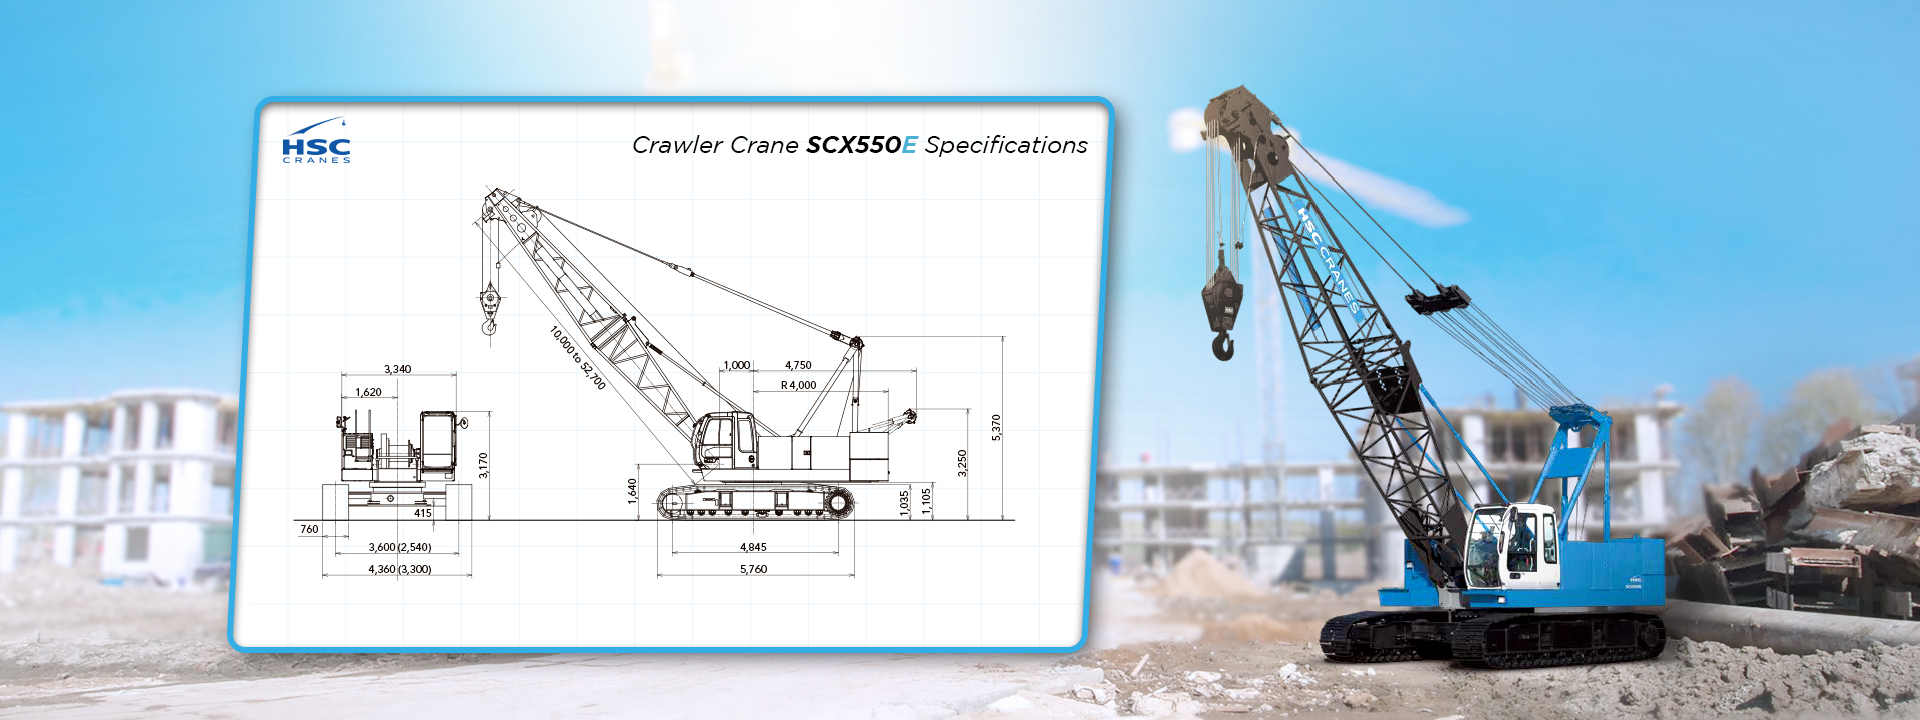 Crawler crane scx550e